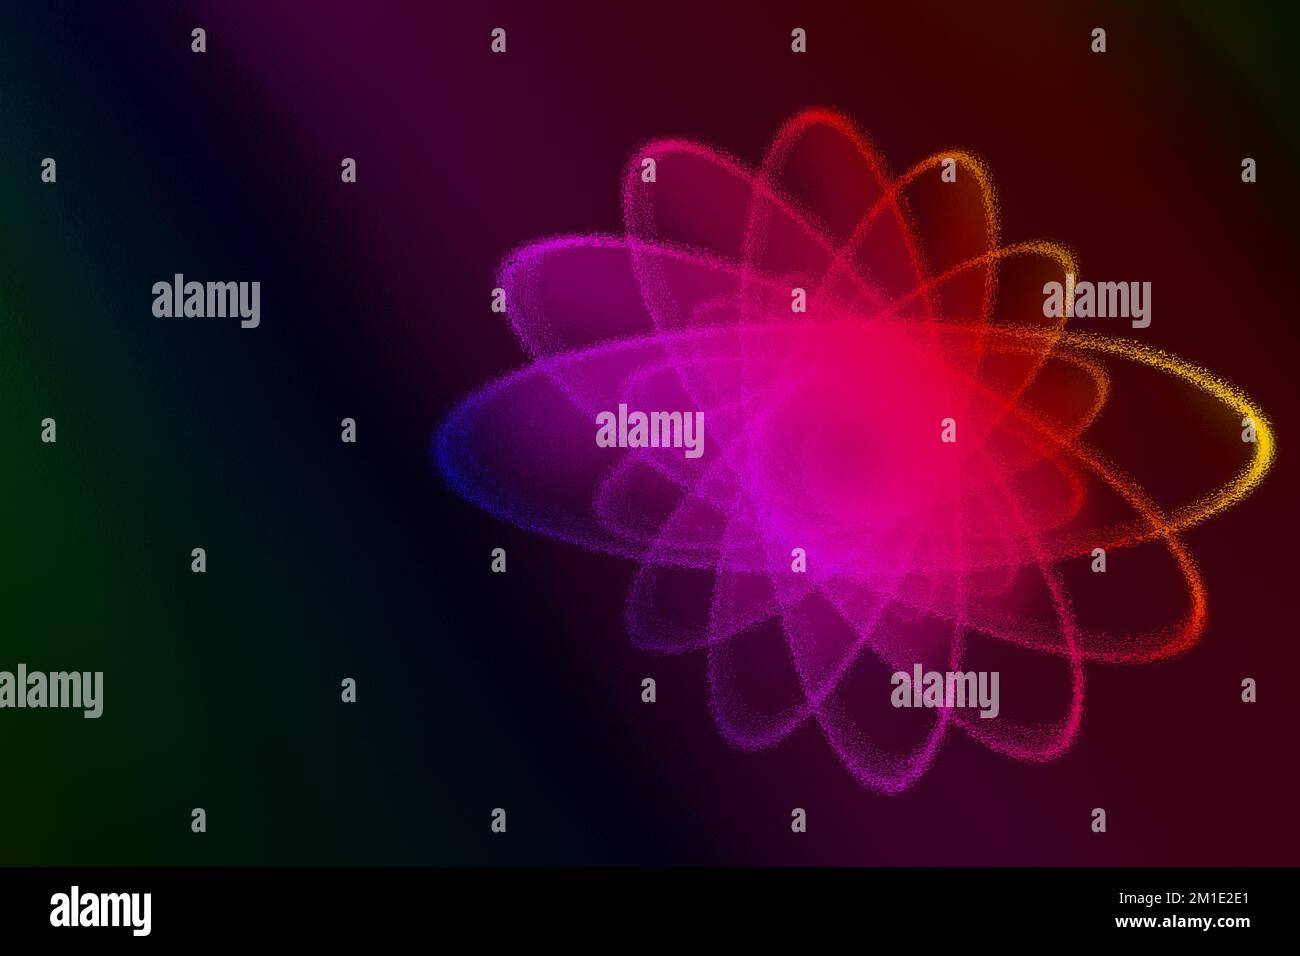 Theme of physics, atomic nucleus, cosmos, astronomy Stock Photo